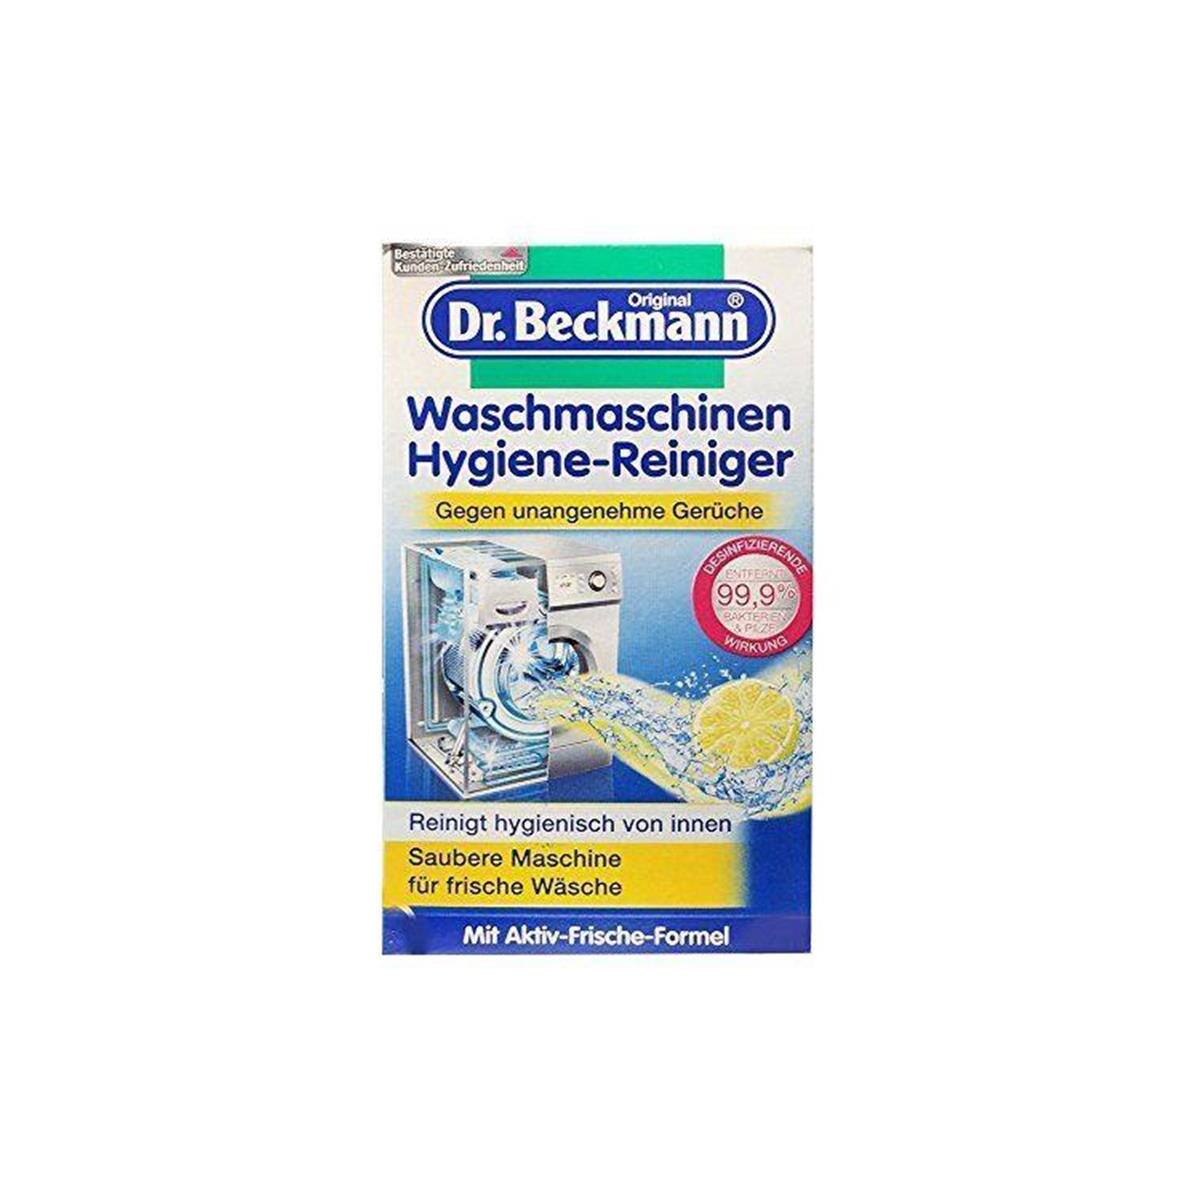 Dr. Beckmann Washing Machine Cleaner Hygiene, 250 G